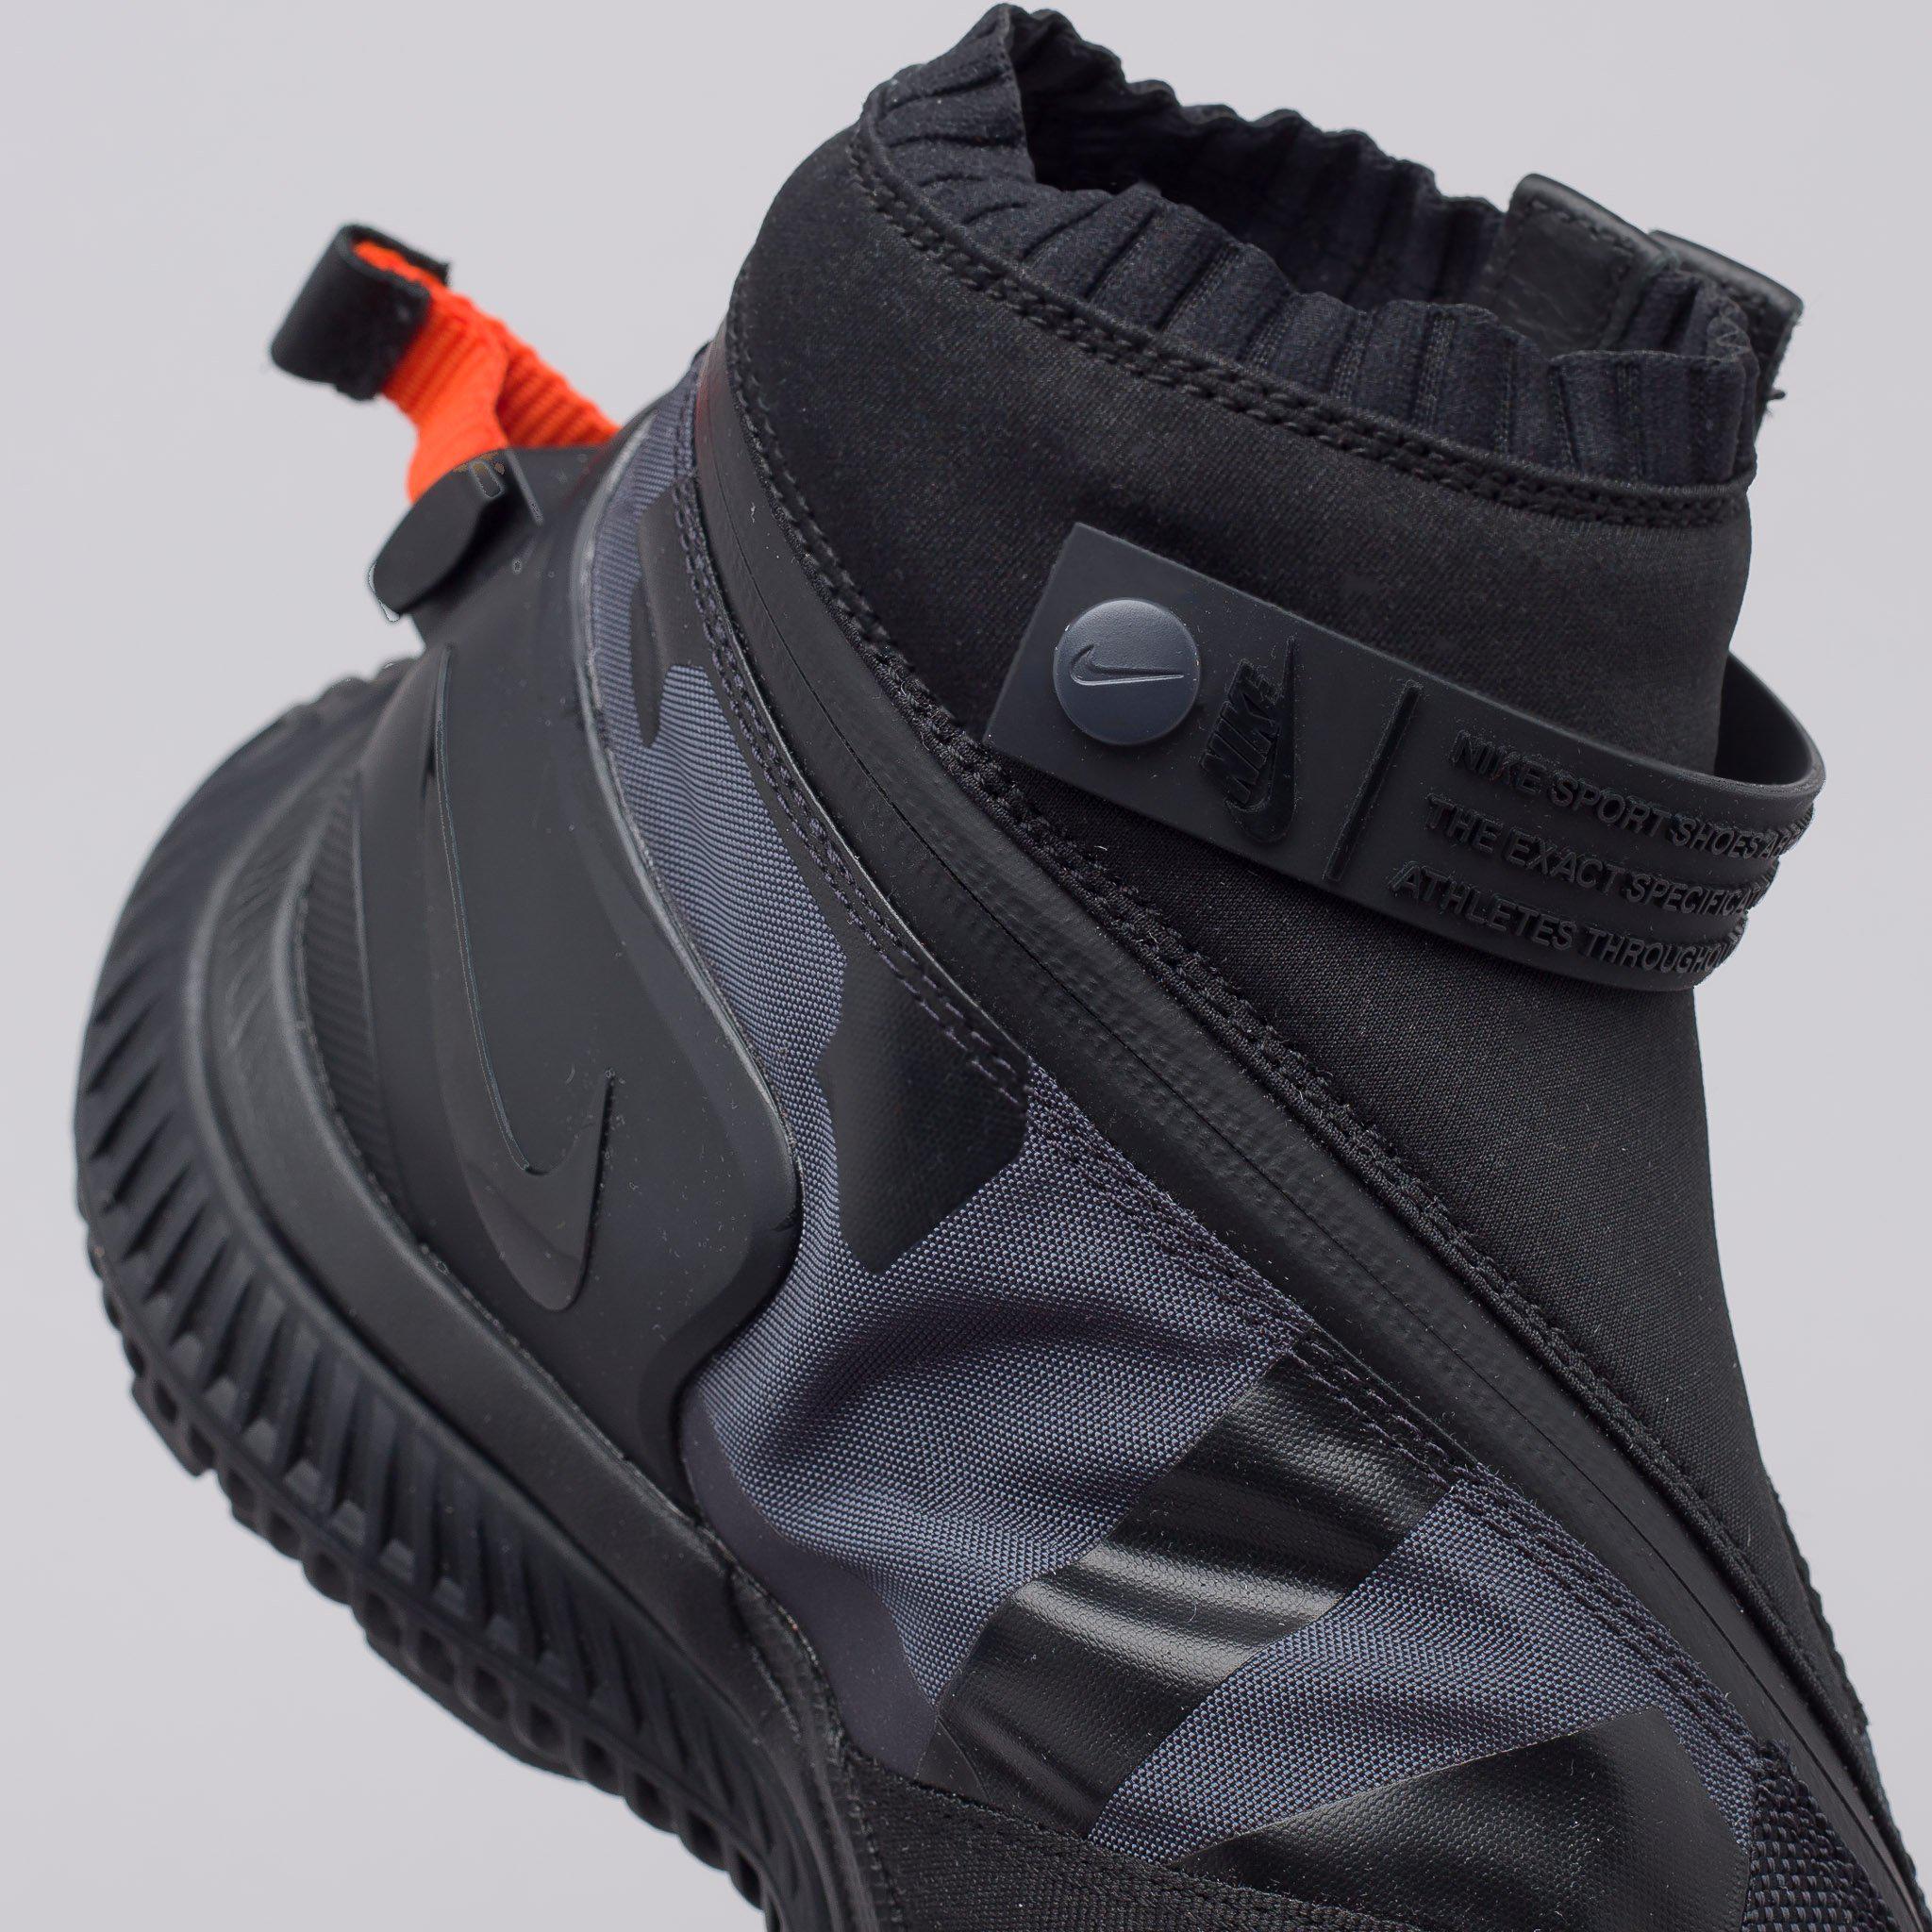 Lyst - Nike Acg Gaiter Boot In Black in Black for Men